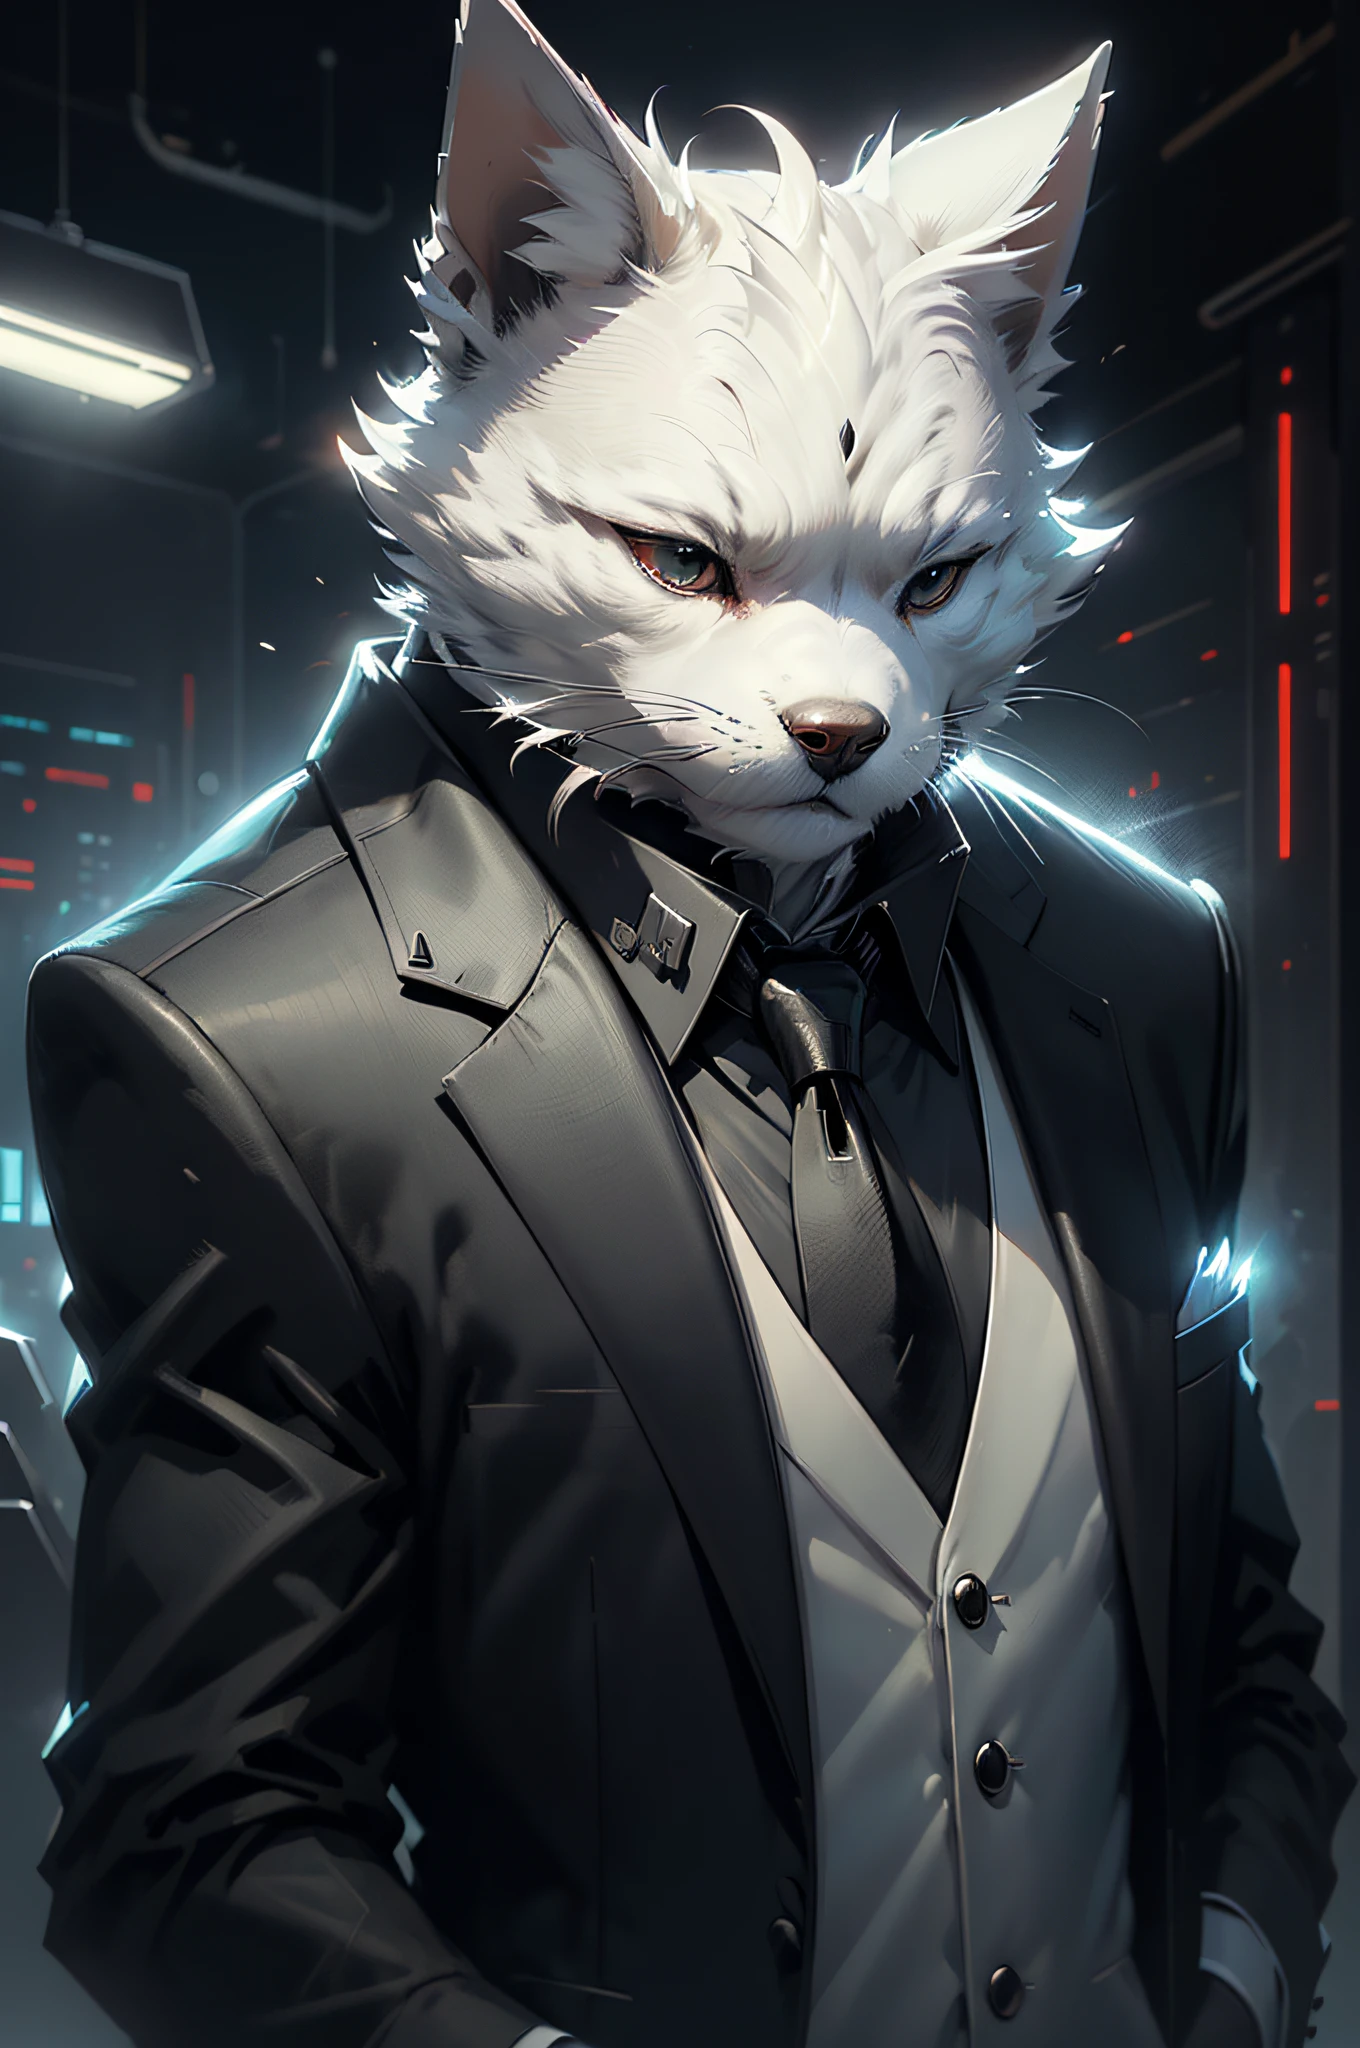 (Mann im schwarzen Anzug und Krawatte)Comicstrip、Anthropomorpher weißer Terrierhund、cyberpunked